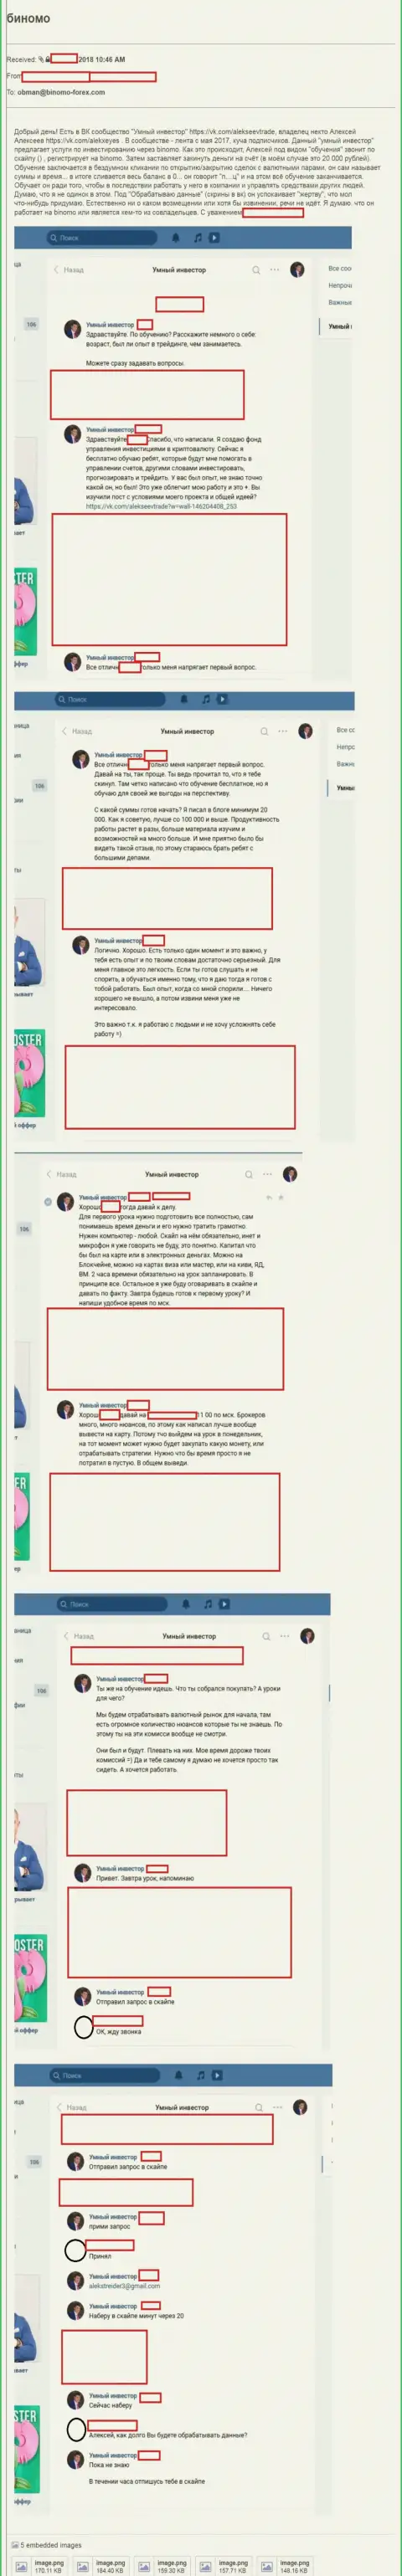 Биномо (видео канал на YouTube Умный Инвестор) - это РАЗВОДИЛЫ !!! Обманули очередного форекс трейдера на 20 российских рублей